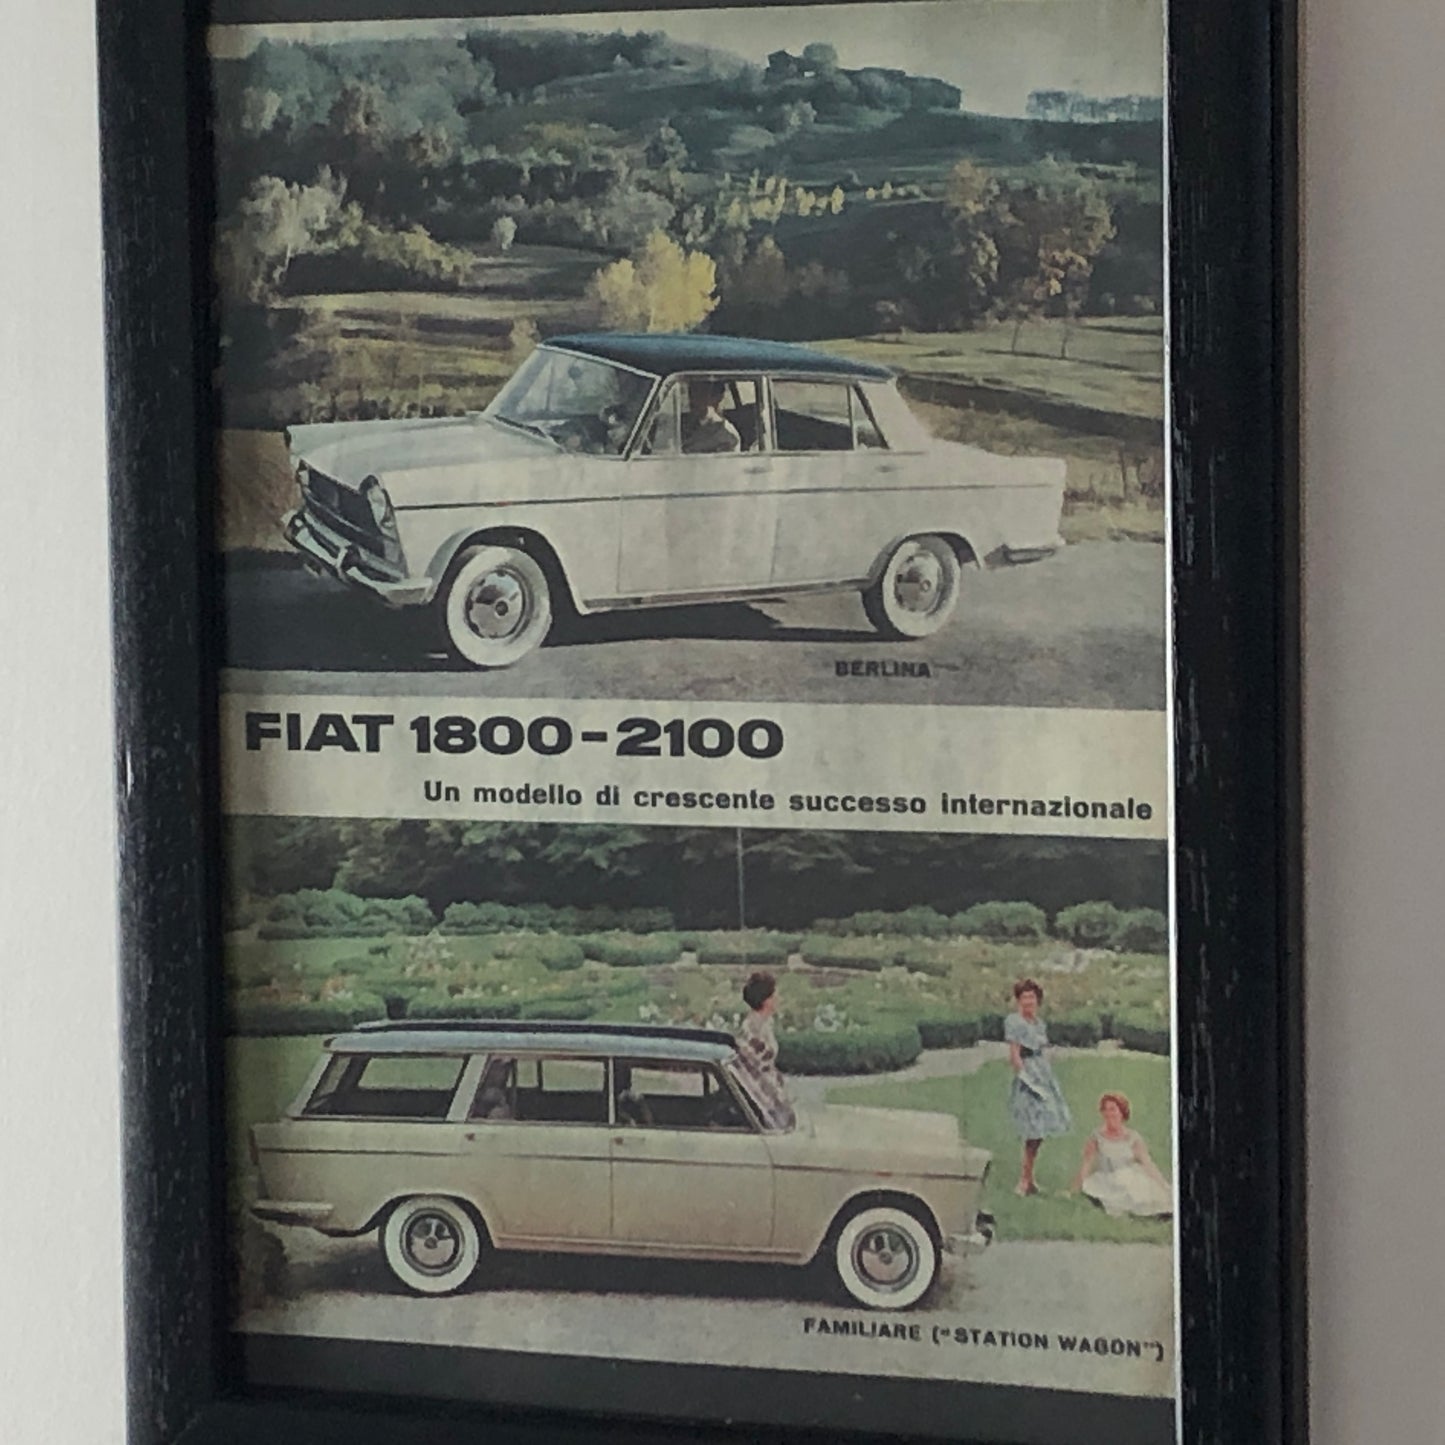 Fiat, Pubblicità Anno 1960 Fiat 1800 - 2100 Berlina e Familiare Station Wagon